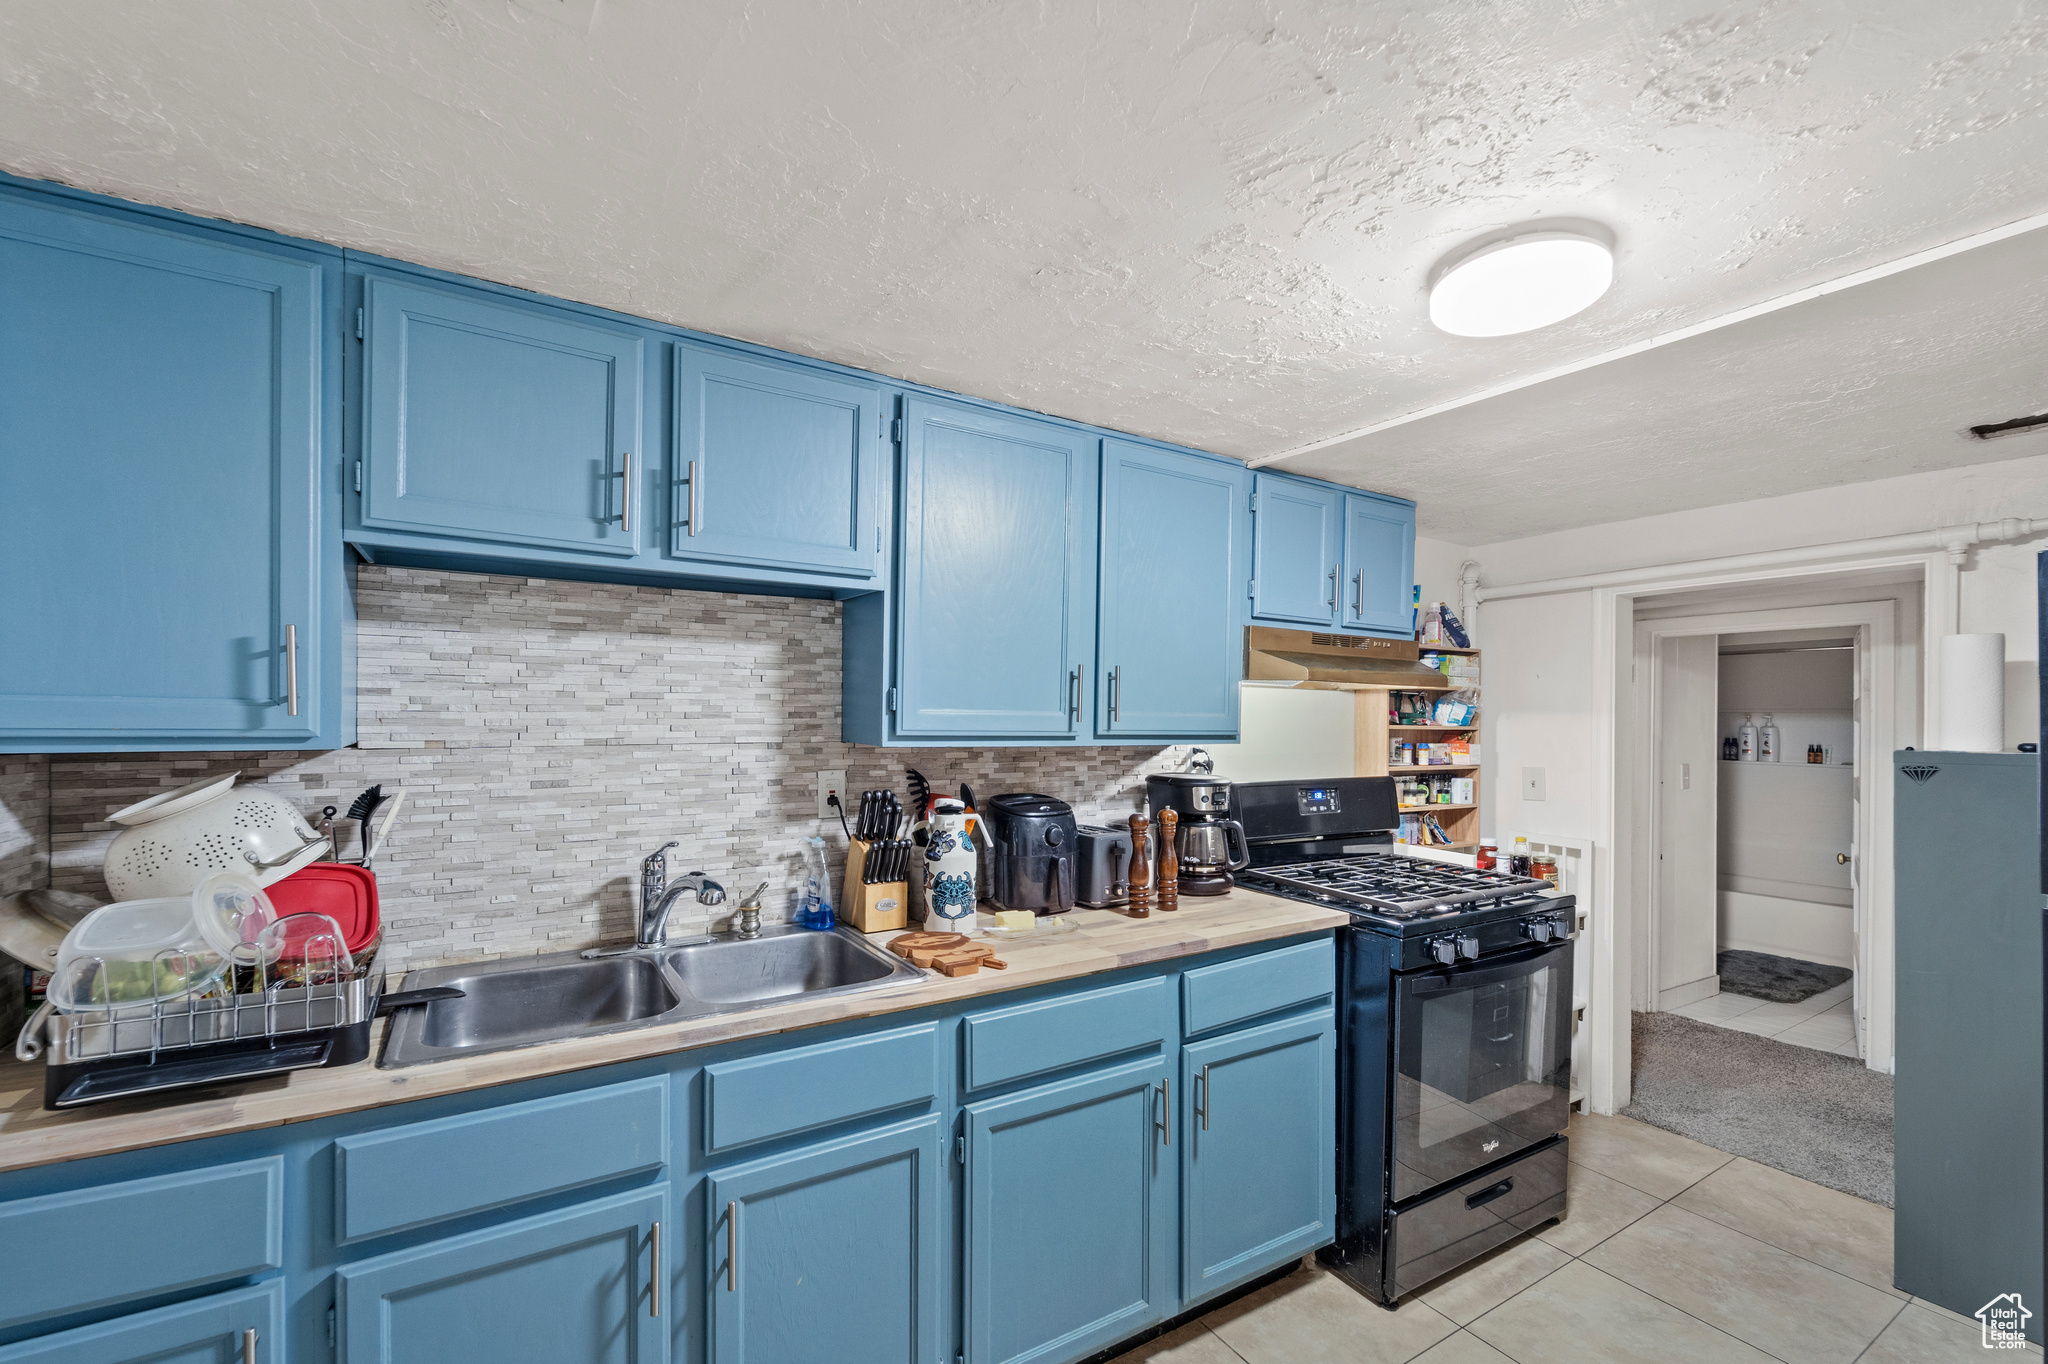 Kitchen with backsplash, blue cabinetry, sink, light tile floors, and black gas range